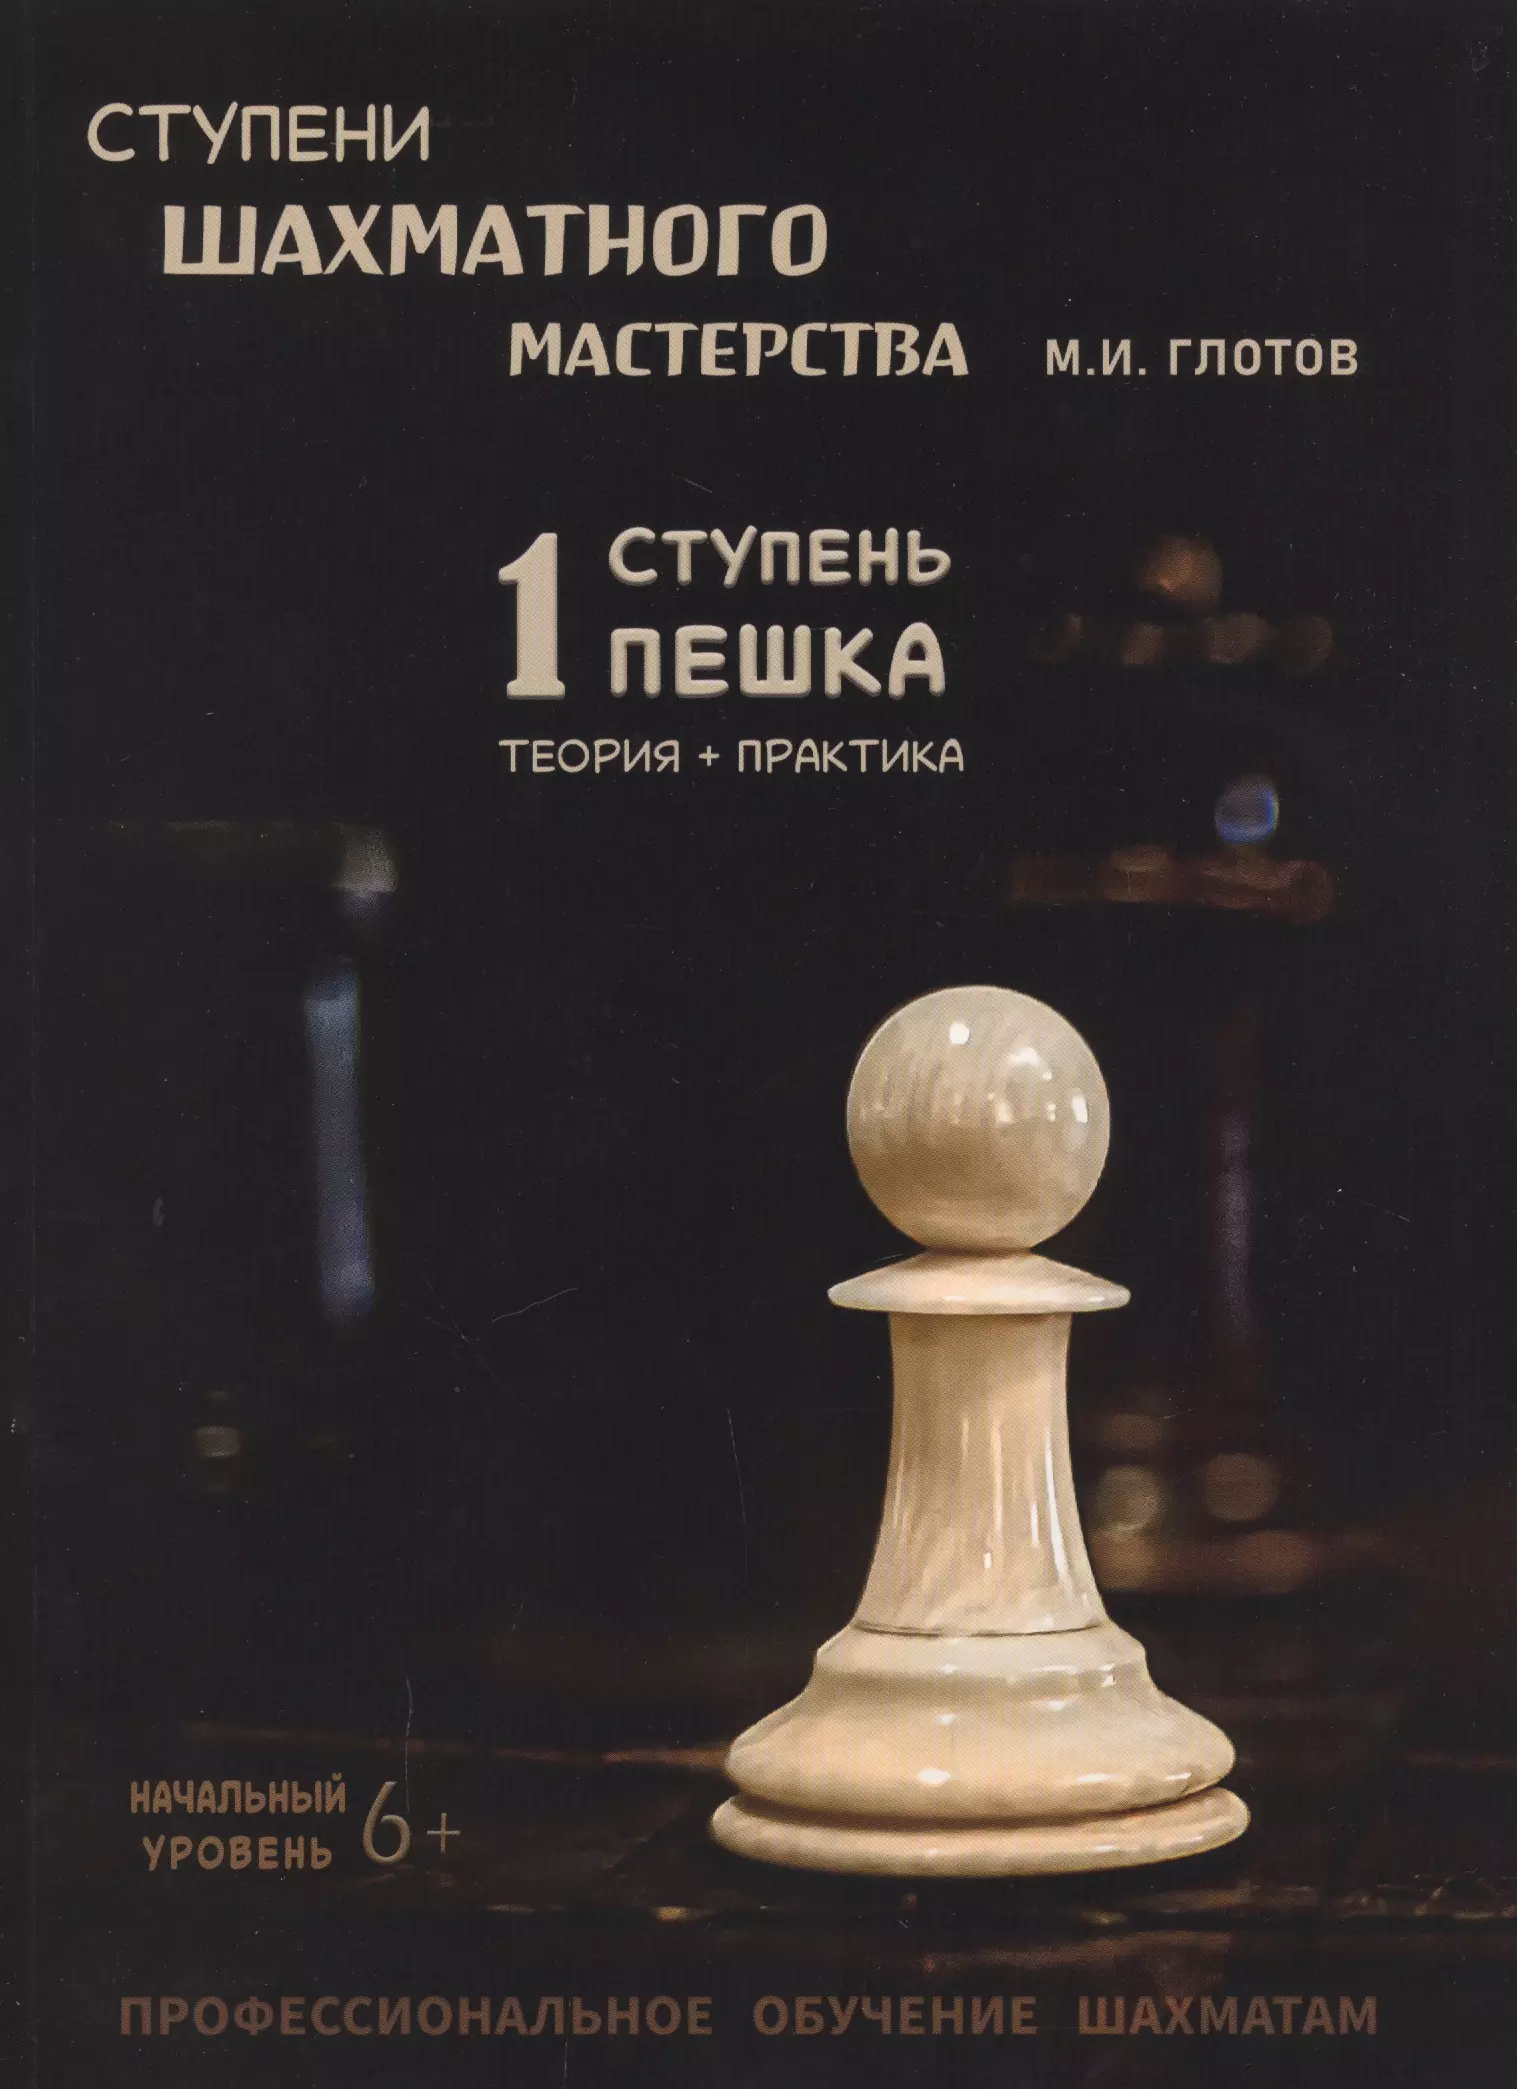 глотов михаил игоревич ступени шахматного мастерства 3 ступень слон Ступени шахматного мастерства. 1 ступень Пешка